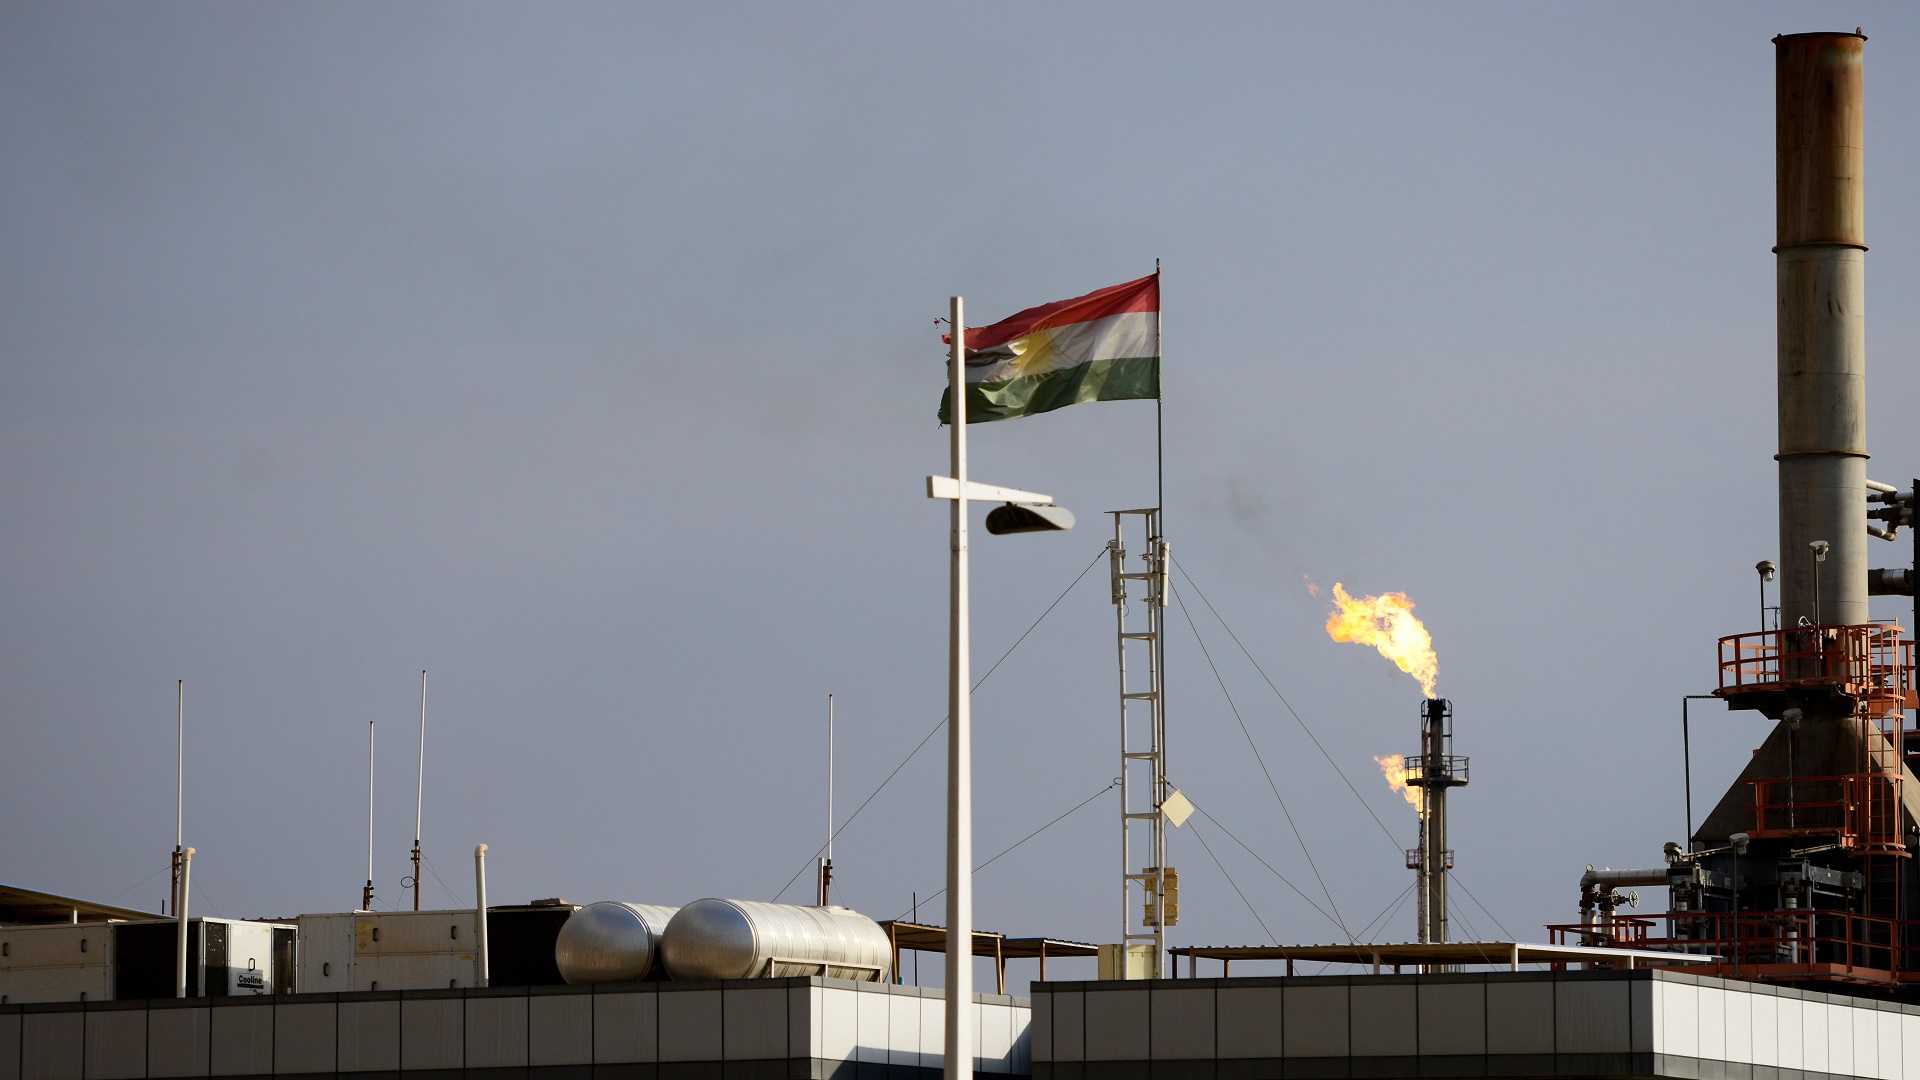 إقليم كردستان يفقد 330 ميغاواط من الكهرباء بسبب توقف إنتاج النفط